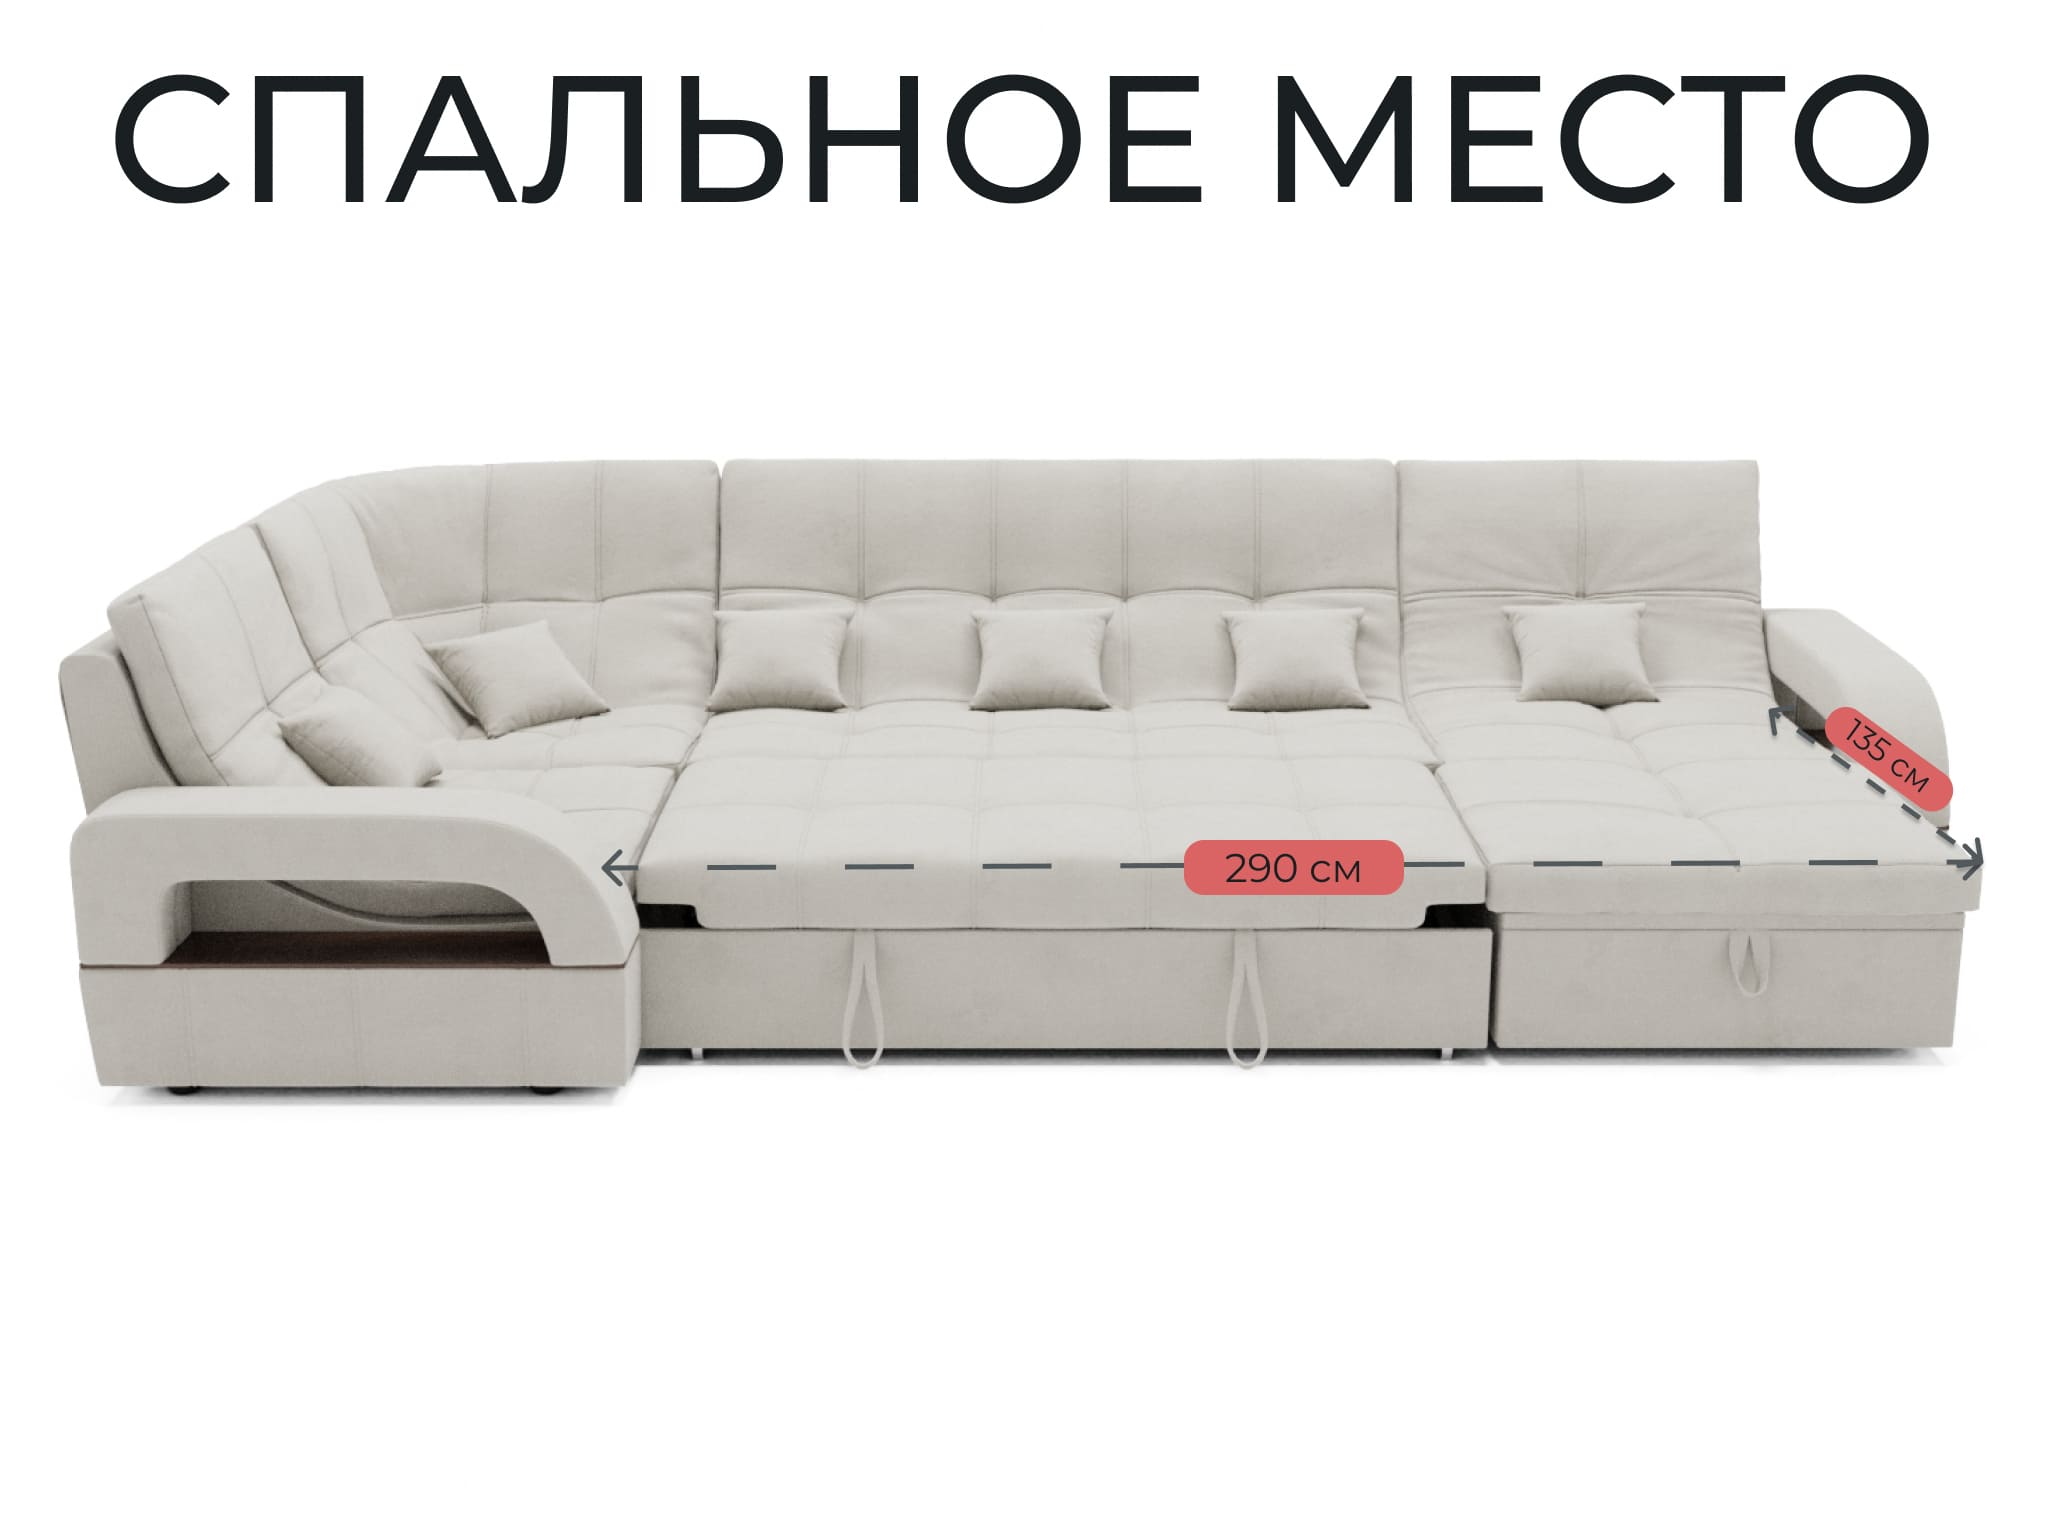 Модульный диван Майами-4,венеция,велюр